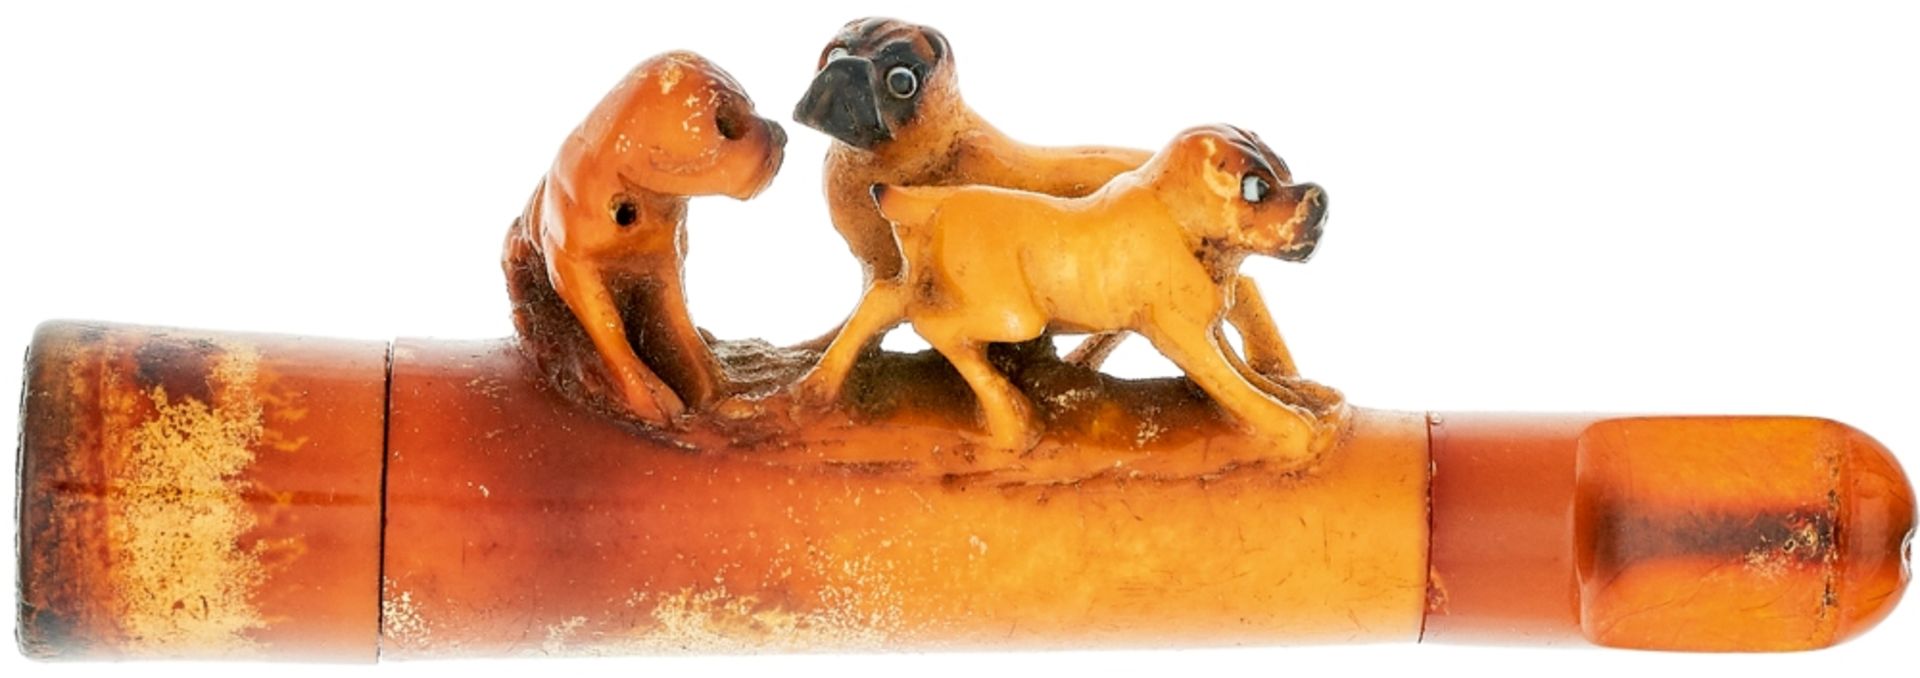 Zigarettenspitze \Meerschaum\ aus Bernstein mit dreier Hundegruppe-Möpsen, 9,4x 3,1cm, in Original-